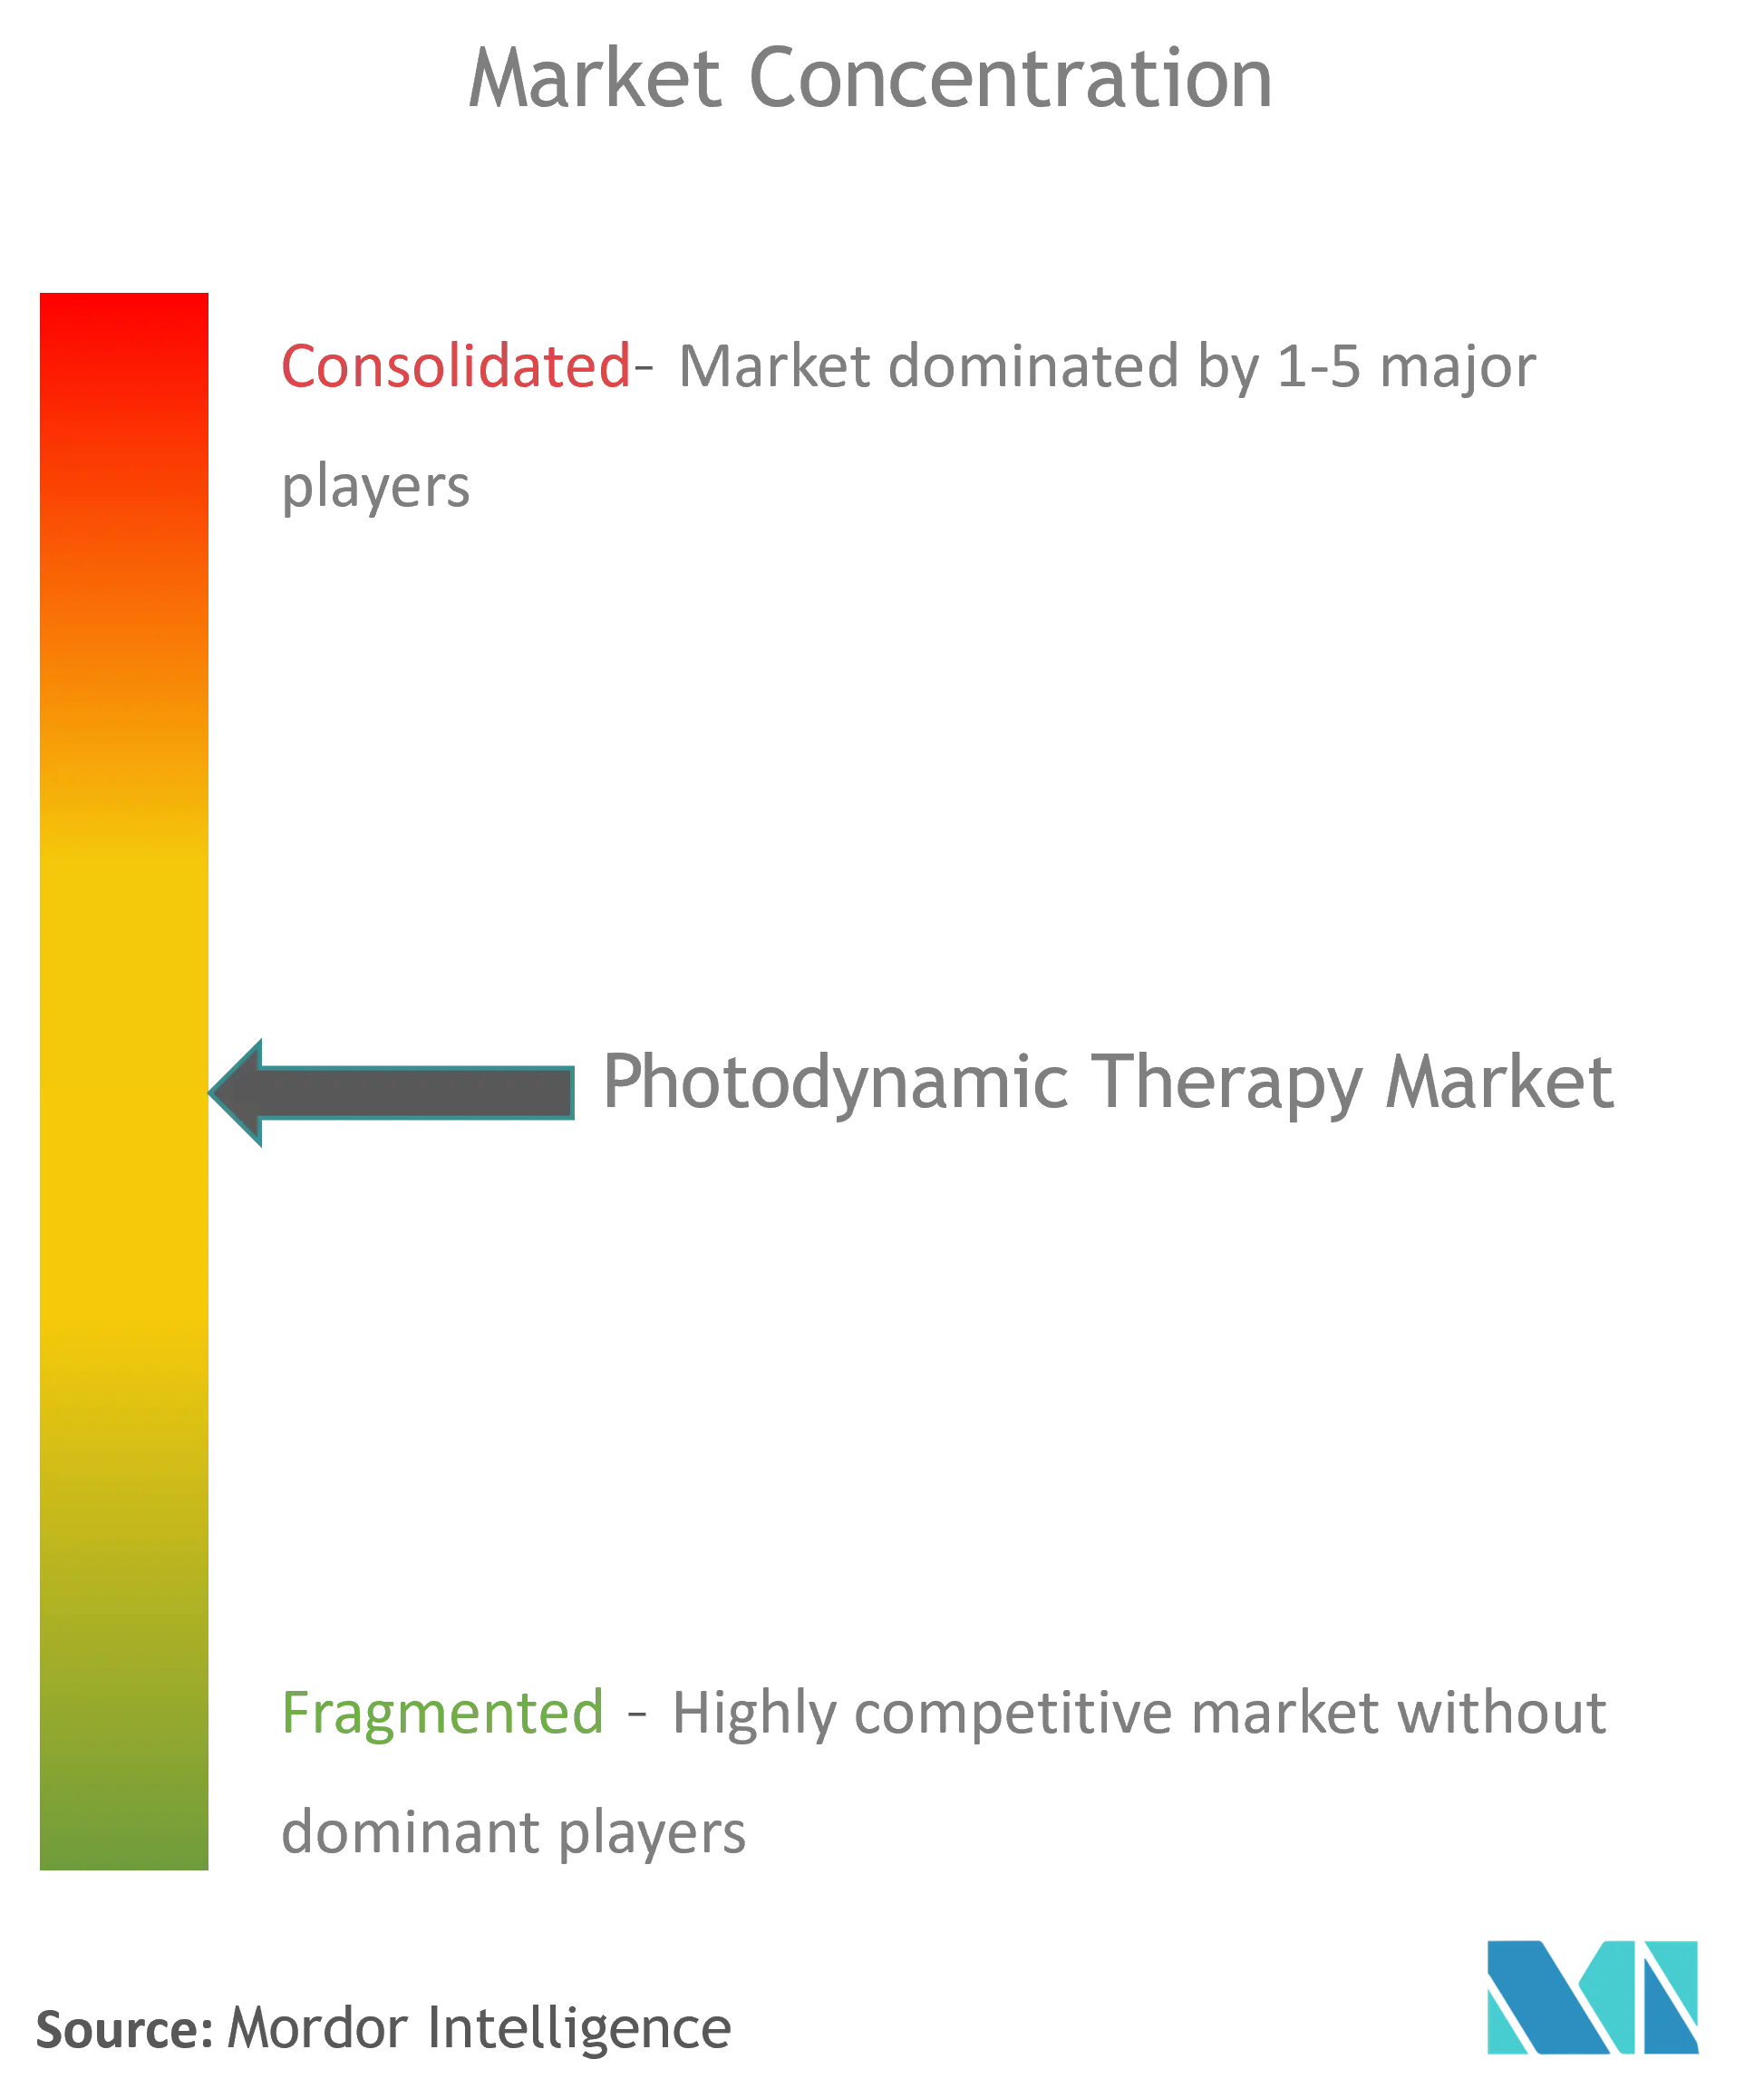 Photodynamische Therapie Market_CL.png